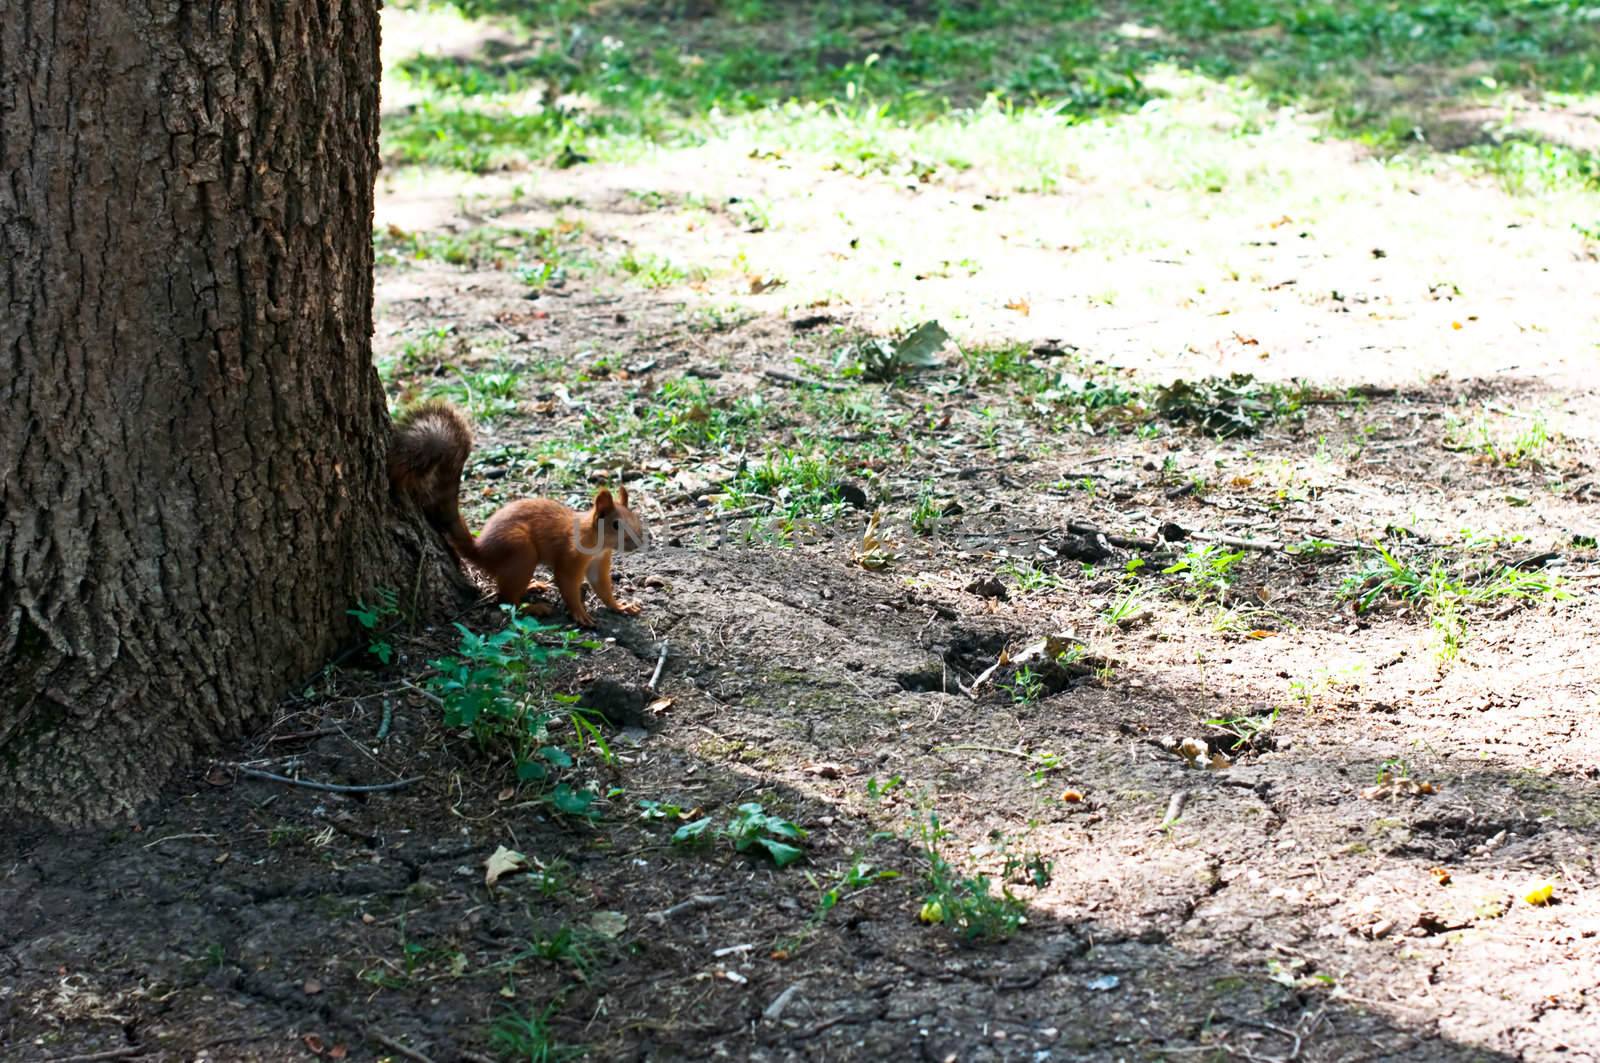 Red squirrel by alena0509